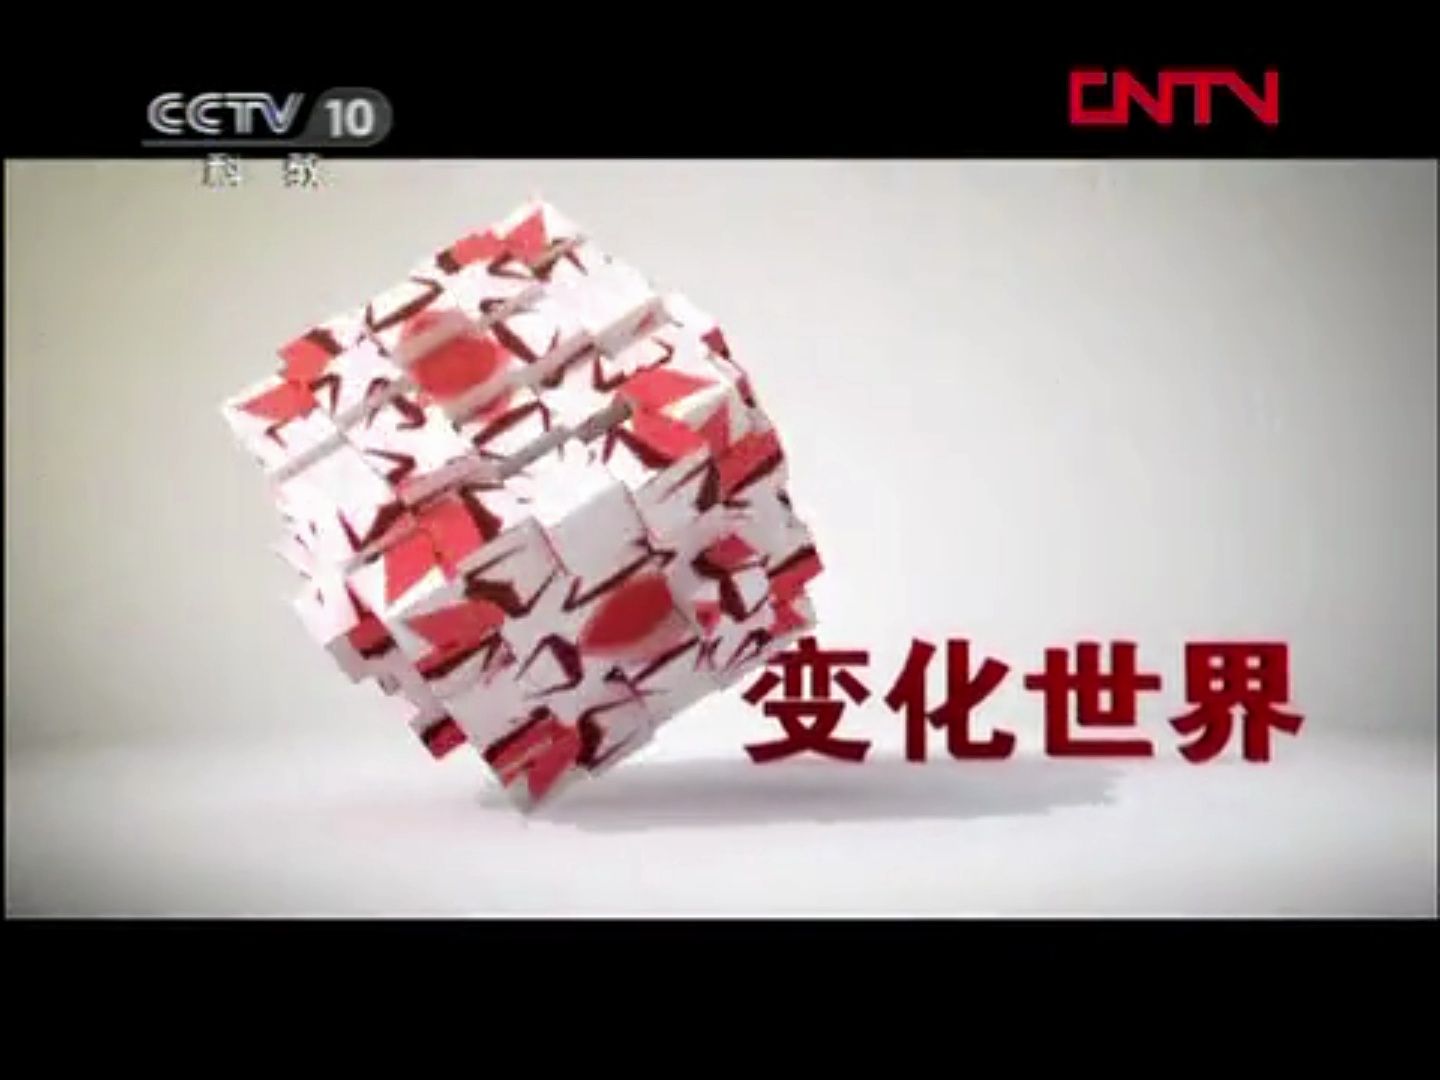 【广播电视】CCTV-10《探索发现》间场广告两则（2012.2.6）